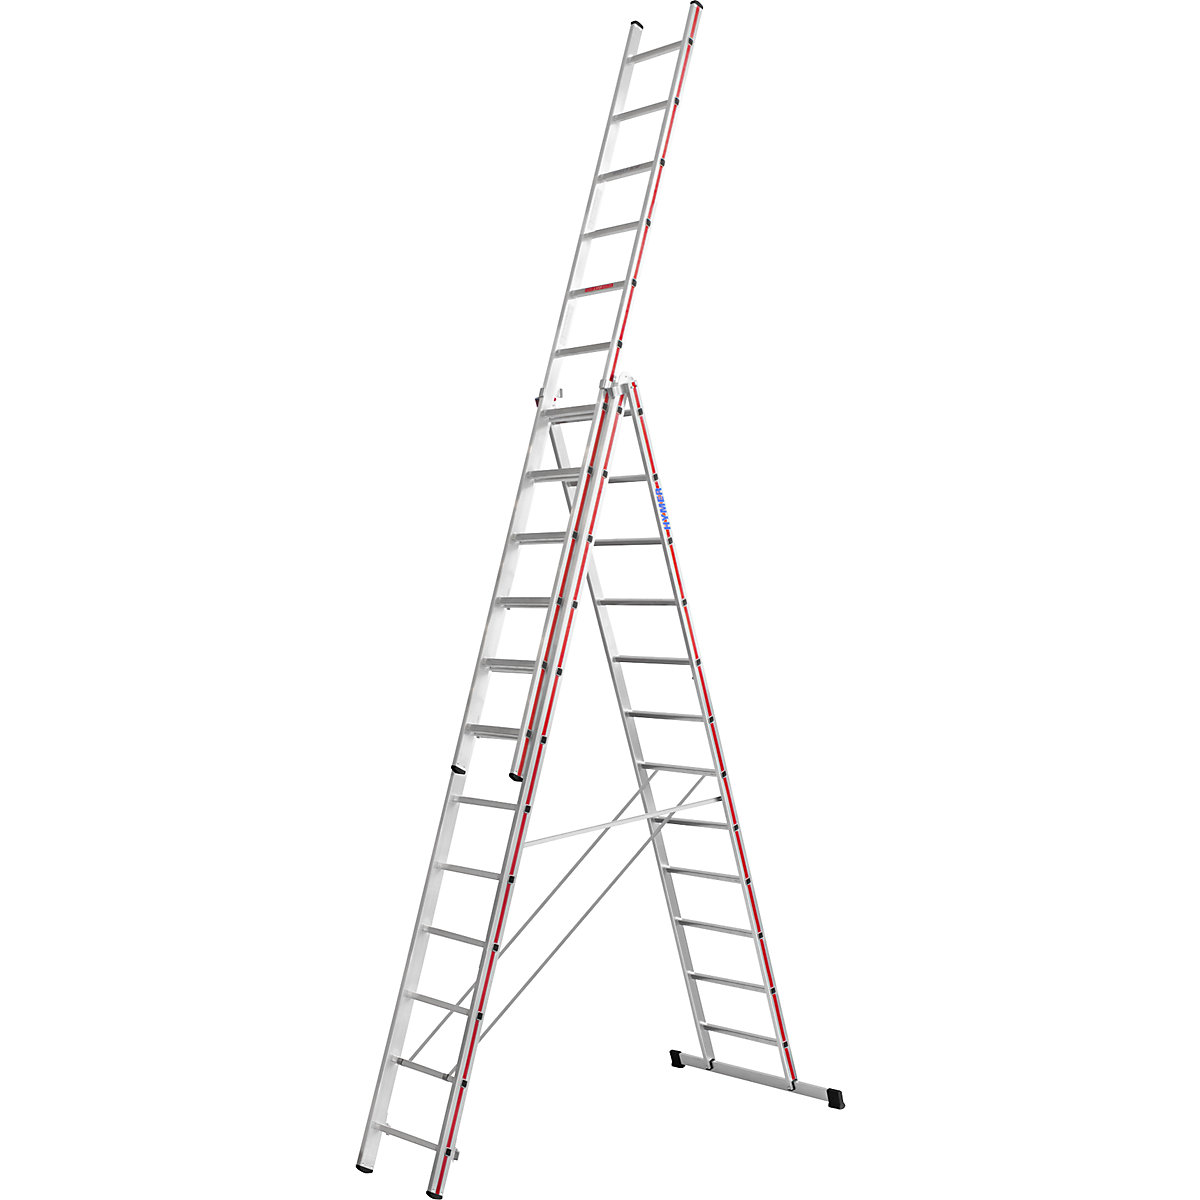 Hliníkový víceúčelový žebřík – HYMER, provedení Profi, 3 x 12 příčlí, max. pracovní výška 9,32 m